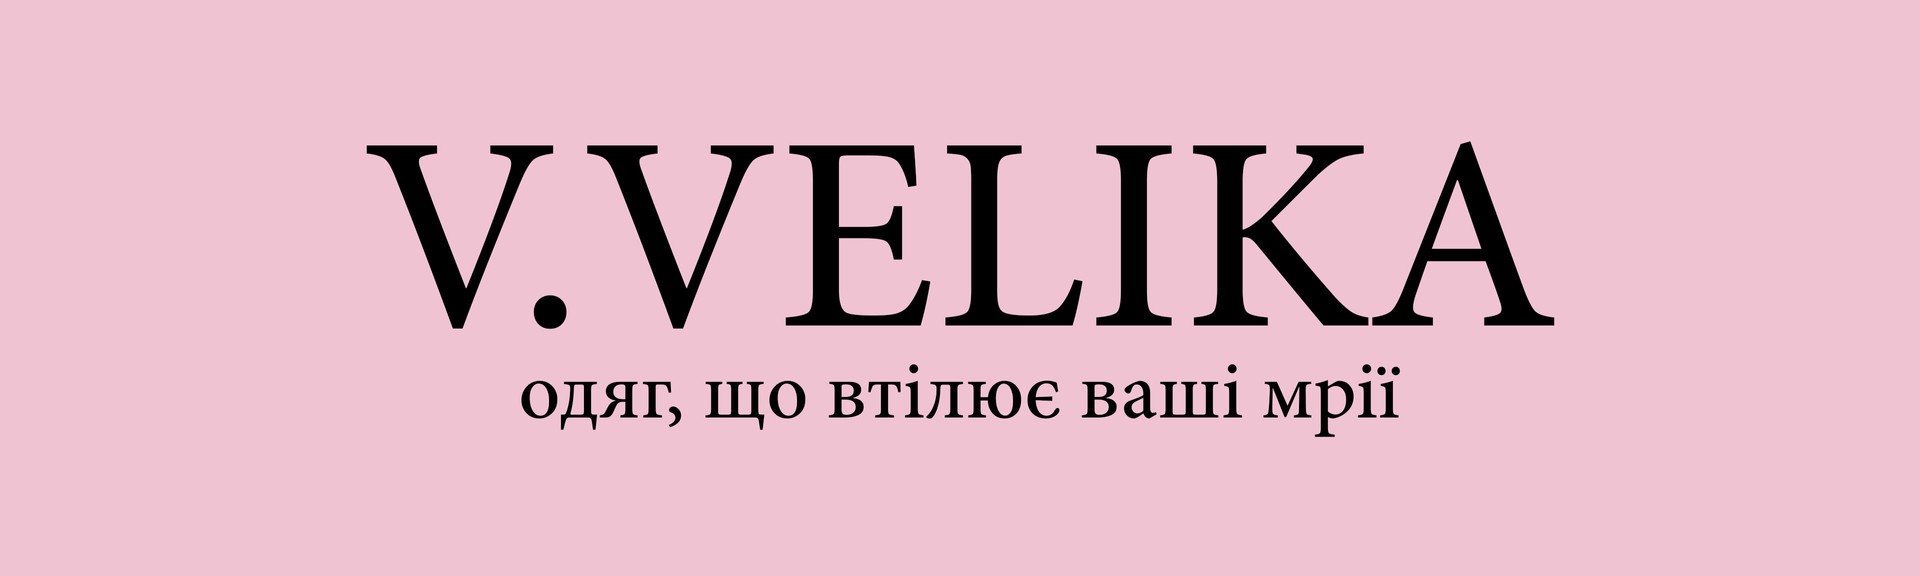 Український виробник стильного одягу V.VELIKA